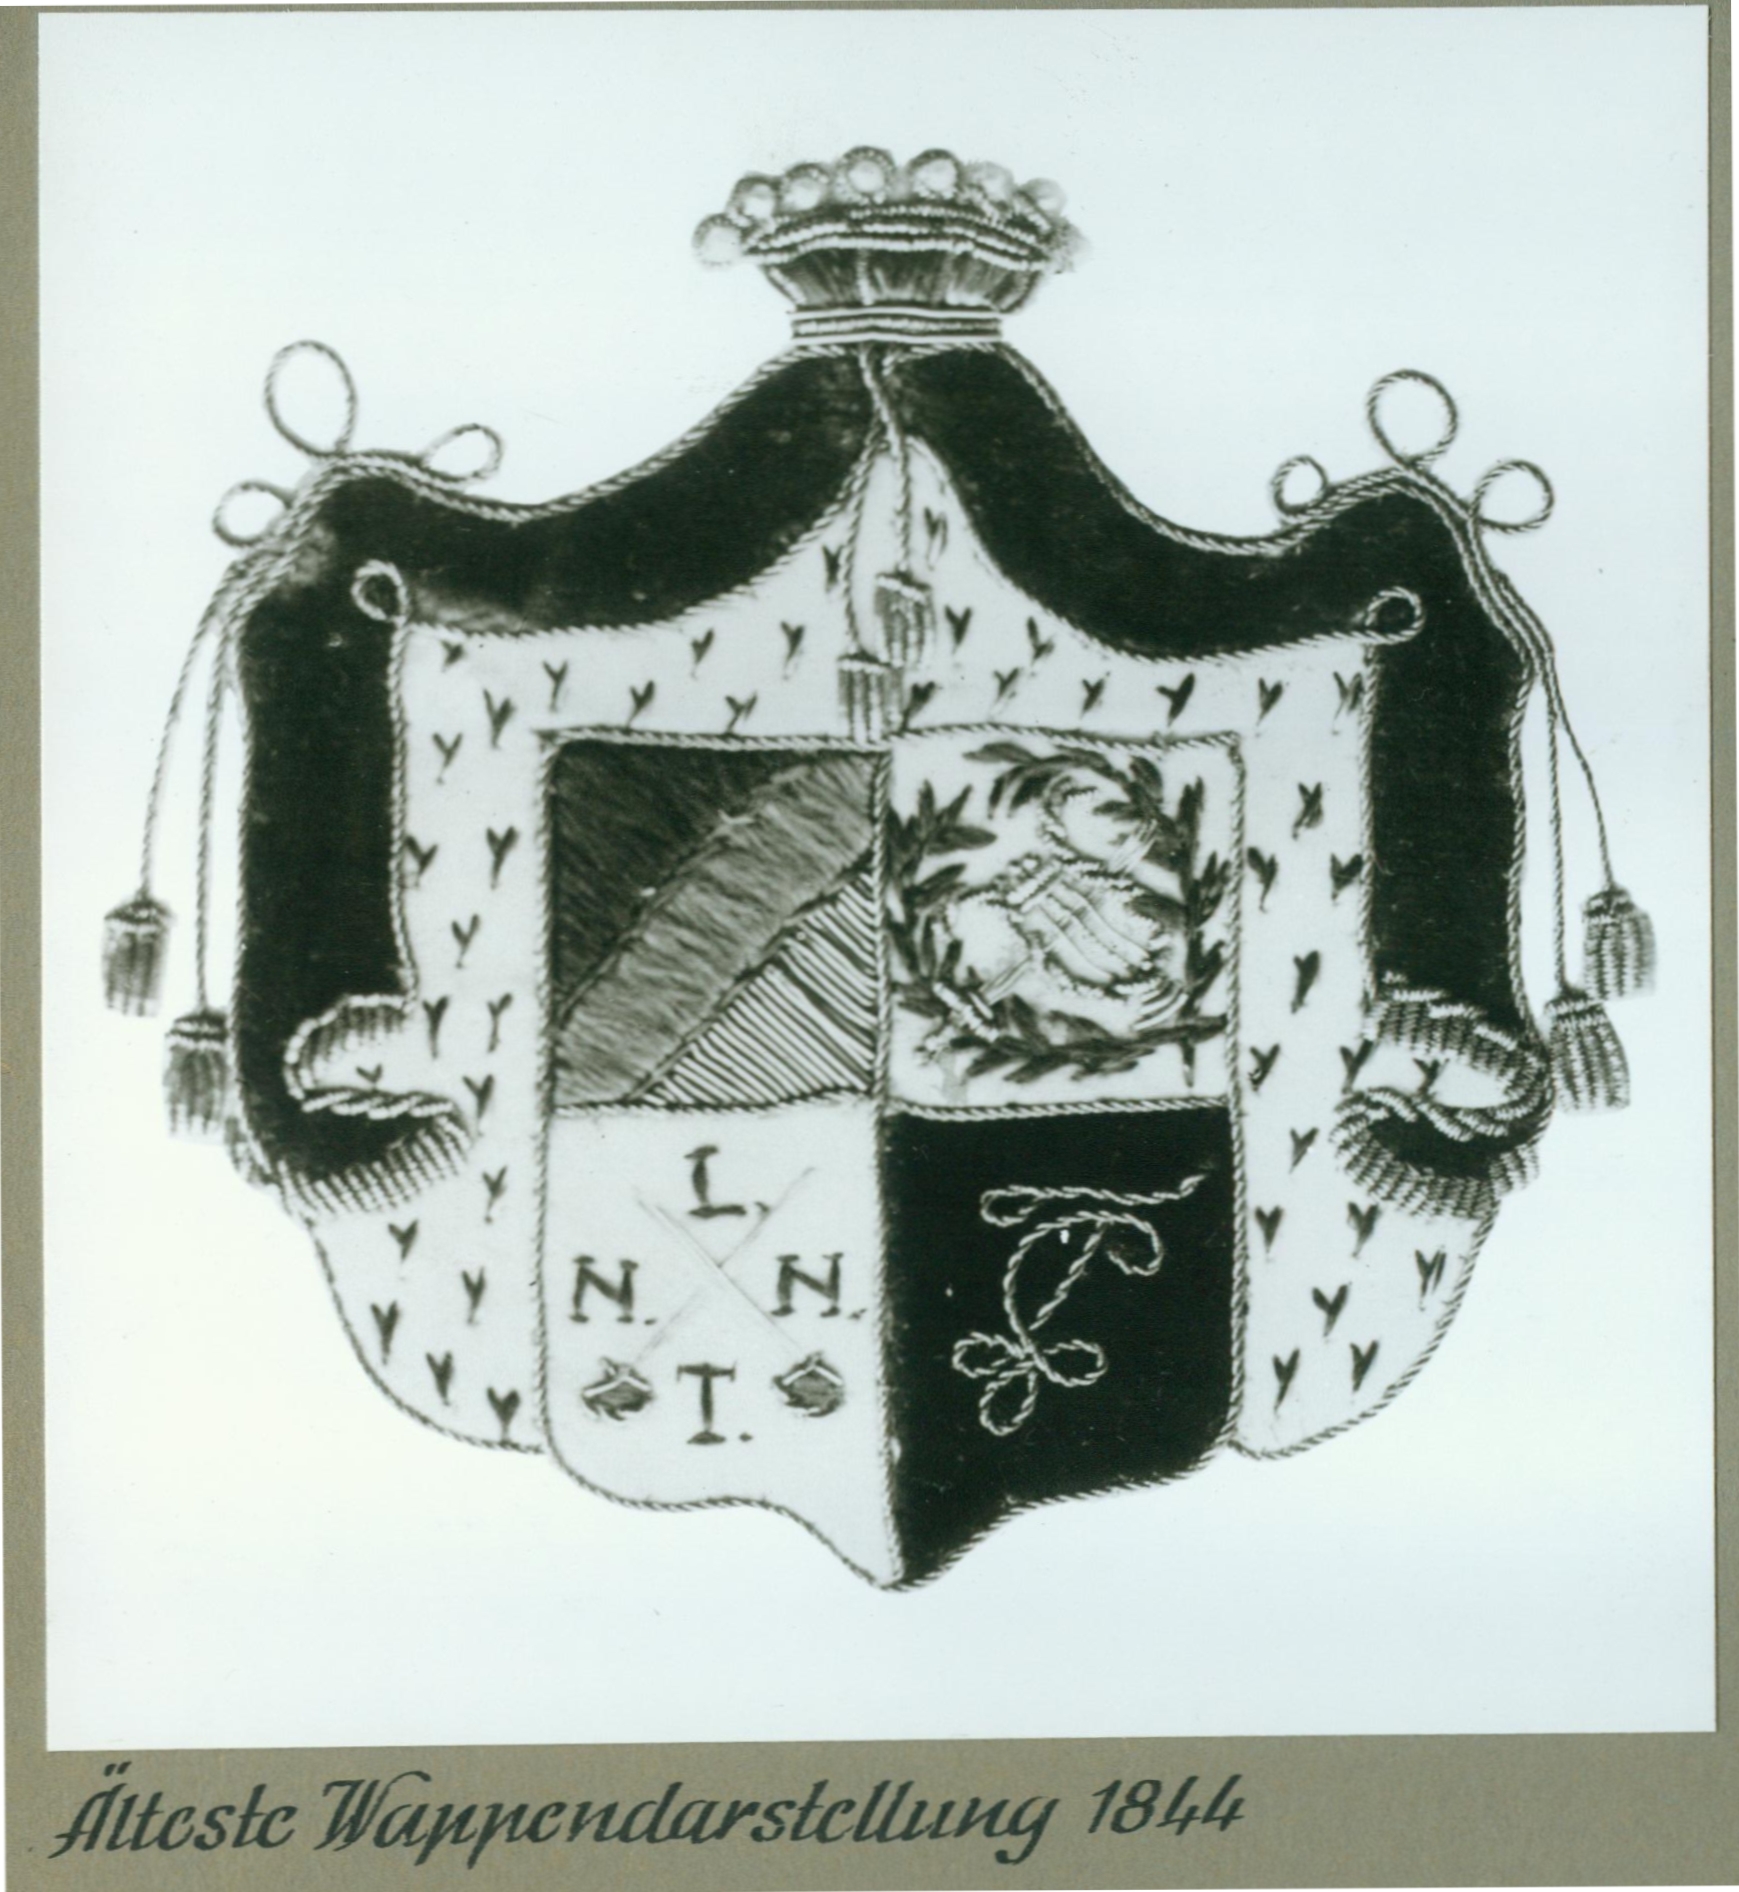 Älteste Wappendarstellung der Landsmannschaft Teutonia Bonn von 1844 im Coburger Convent